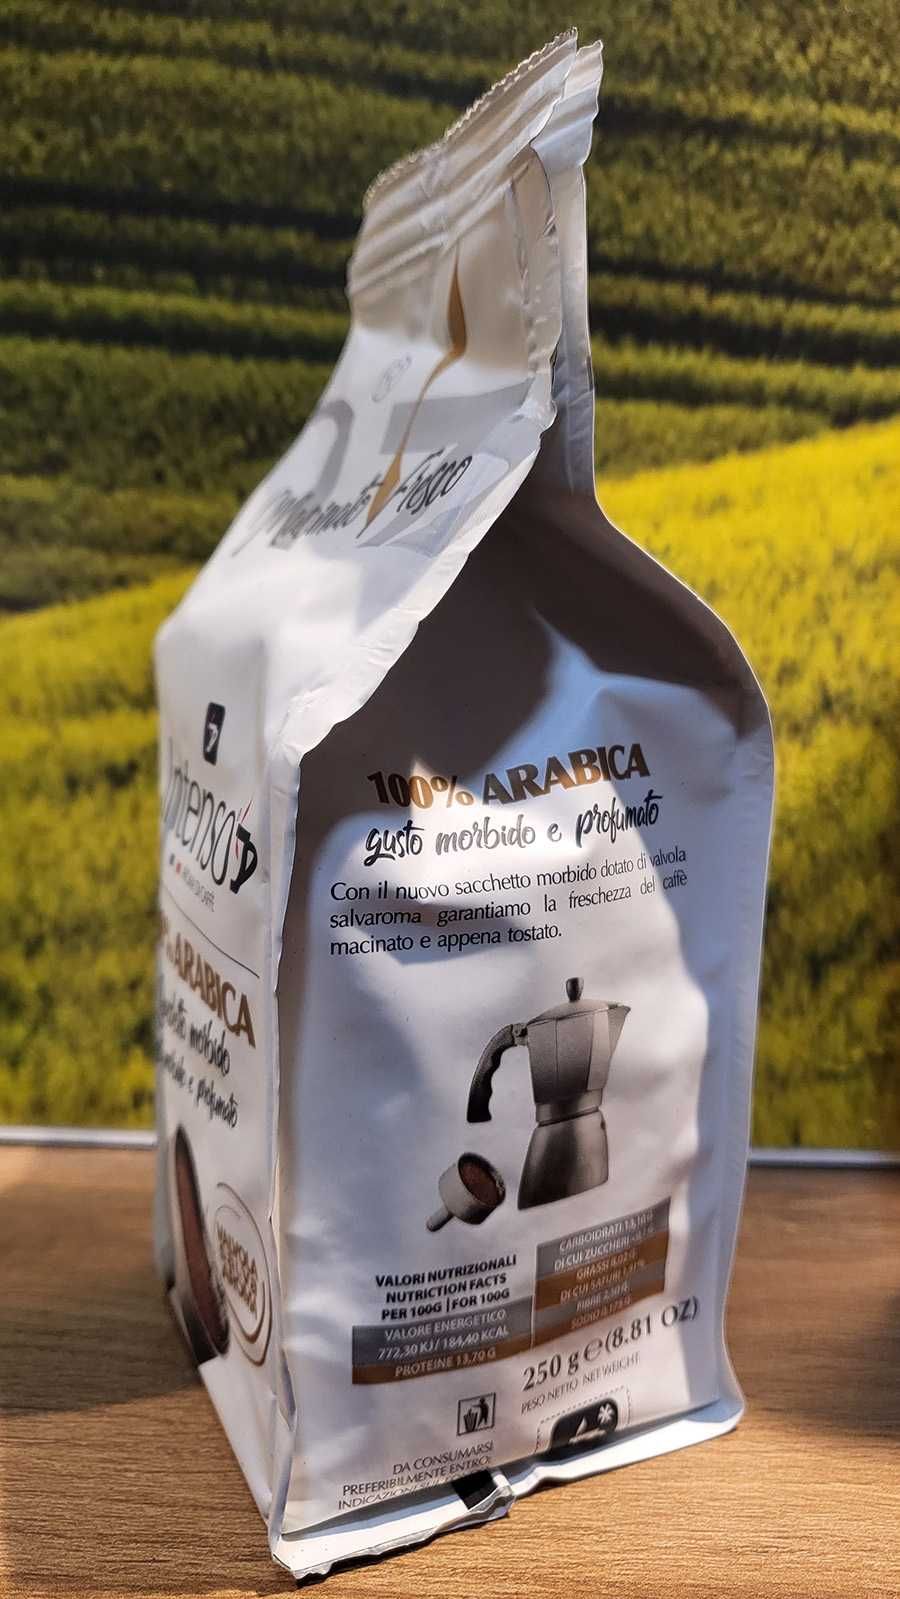 Kawa mielona Intenso ARABICA - 250 gr.